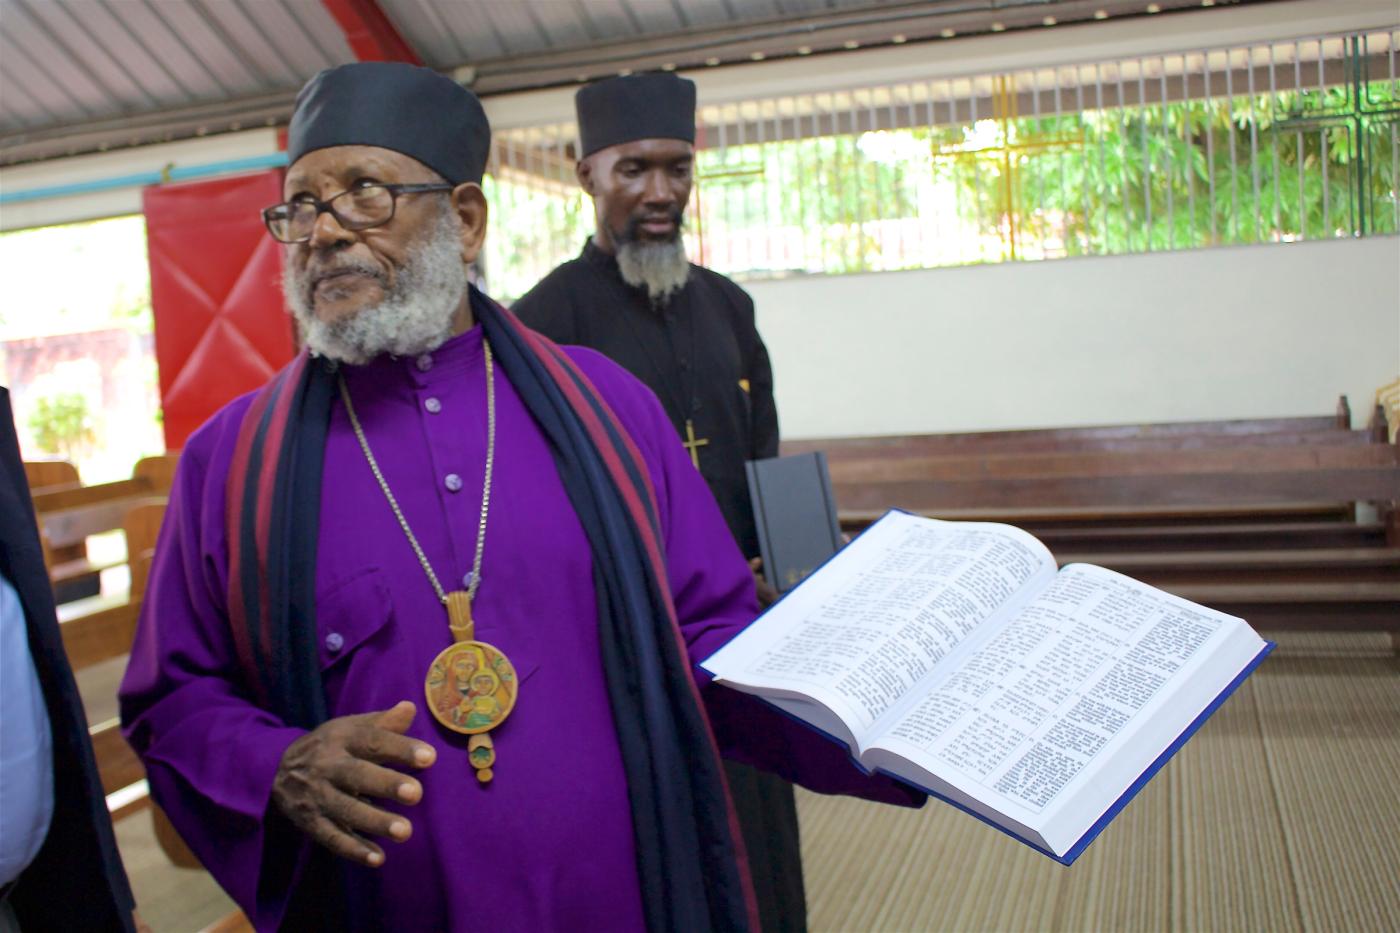 Abune Thaddaeus, l’archevêque de l’Église orthodoxe Tewahedo d'Ethiopie aux Caraïbes et en Amérique latine, en Trinité-et-Tobago.